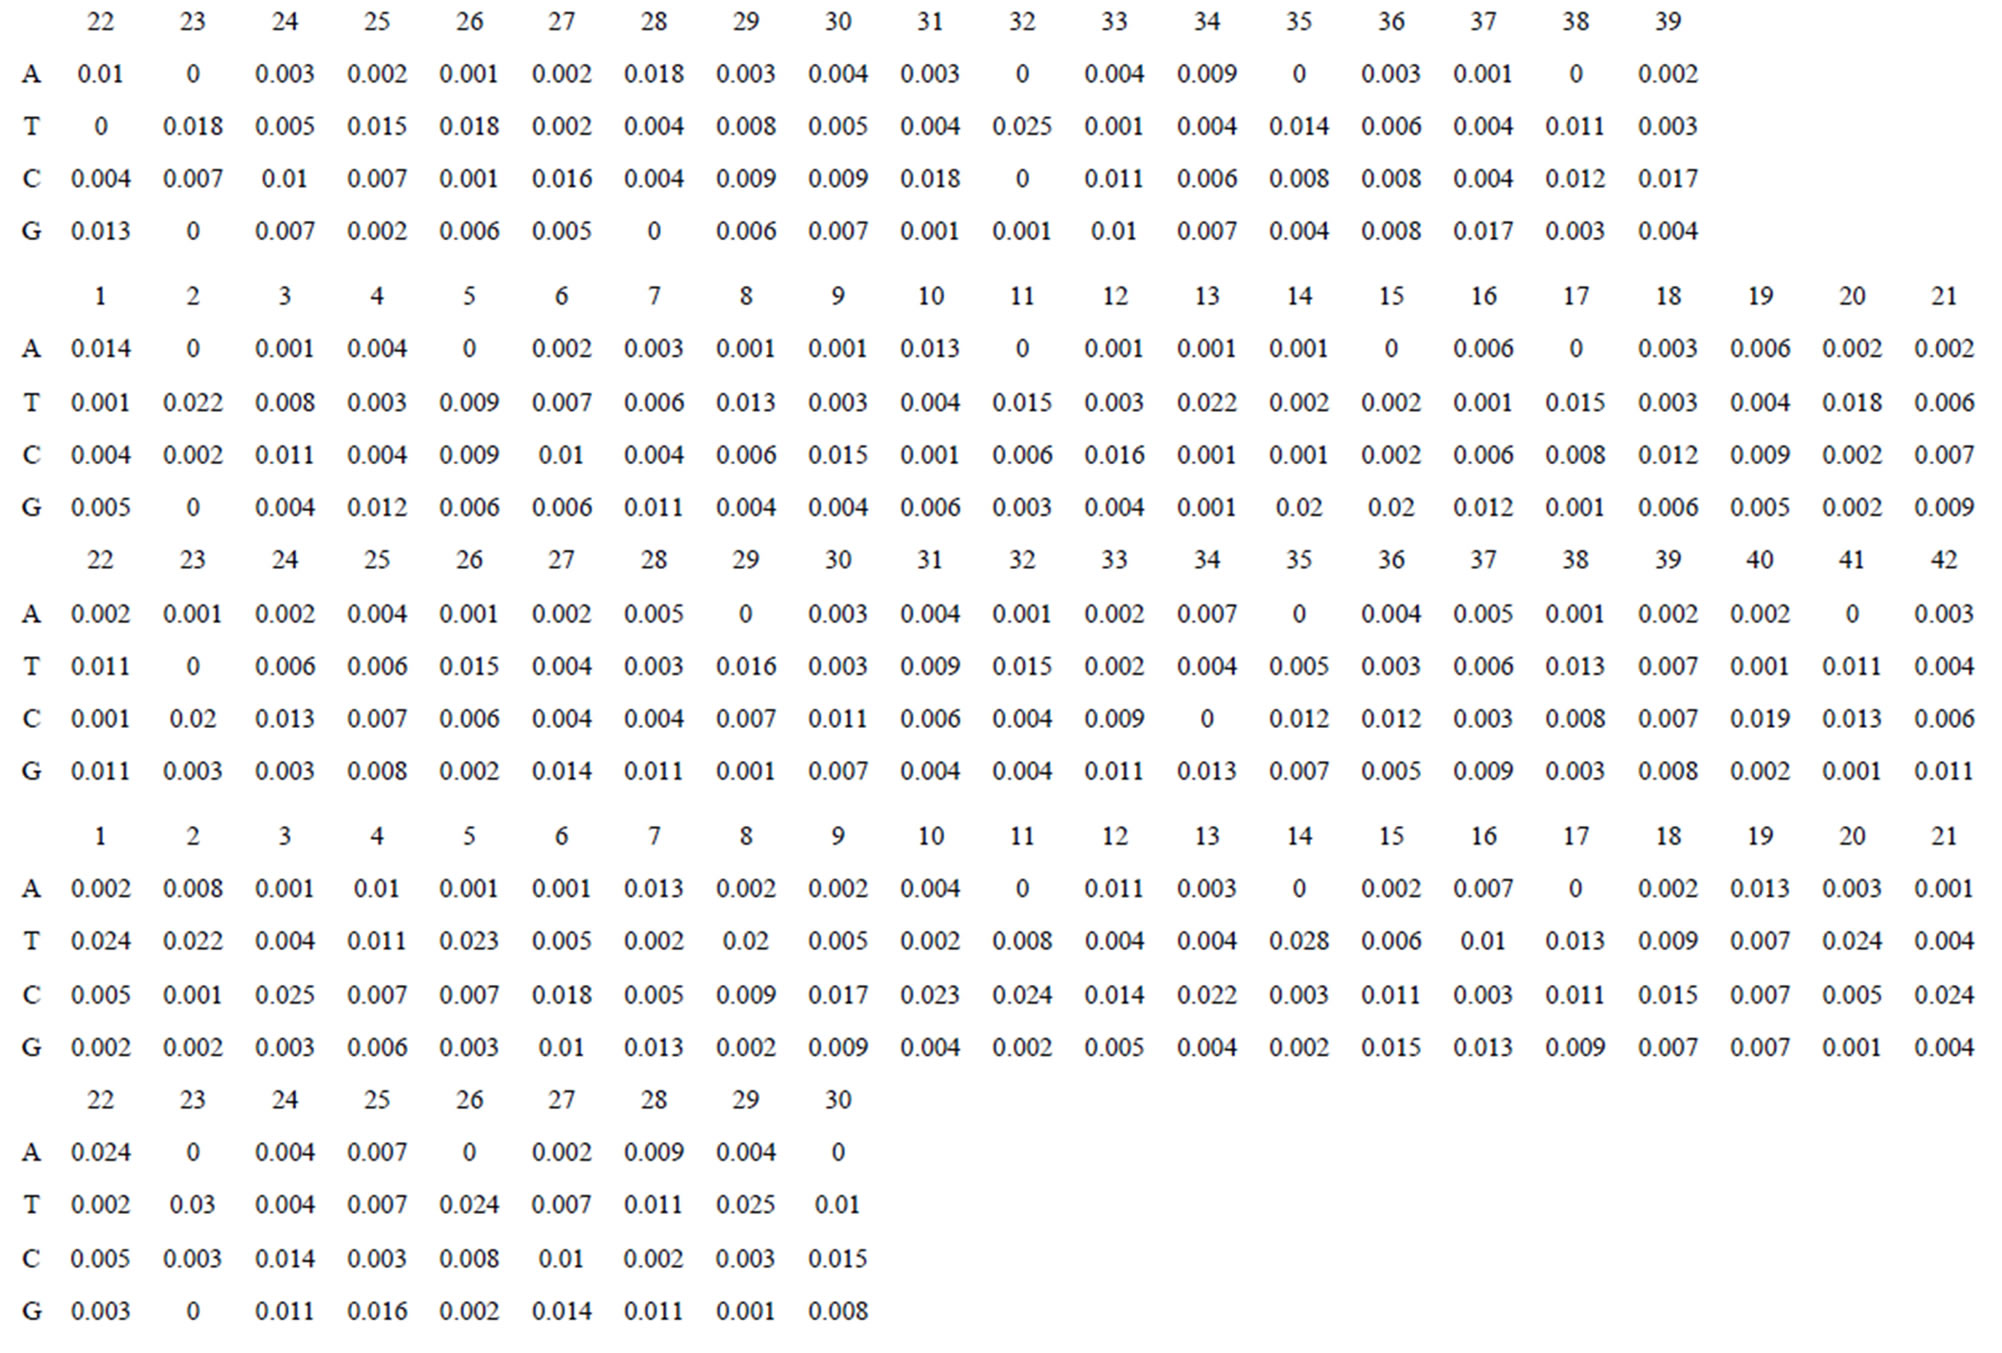 04 04 2024 значение. (2.2/3-2.2/9)*(2-1.1/2). (6 1/5-4 1/3):1 1/3. (4 + 5 + 7) / 3 = 5,333333333 Программа. (1,2,2,2,3,6) - Набор степеней Связного плоского графа.